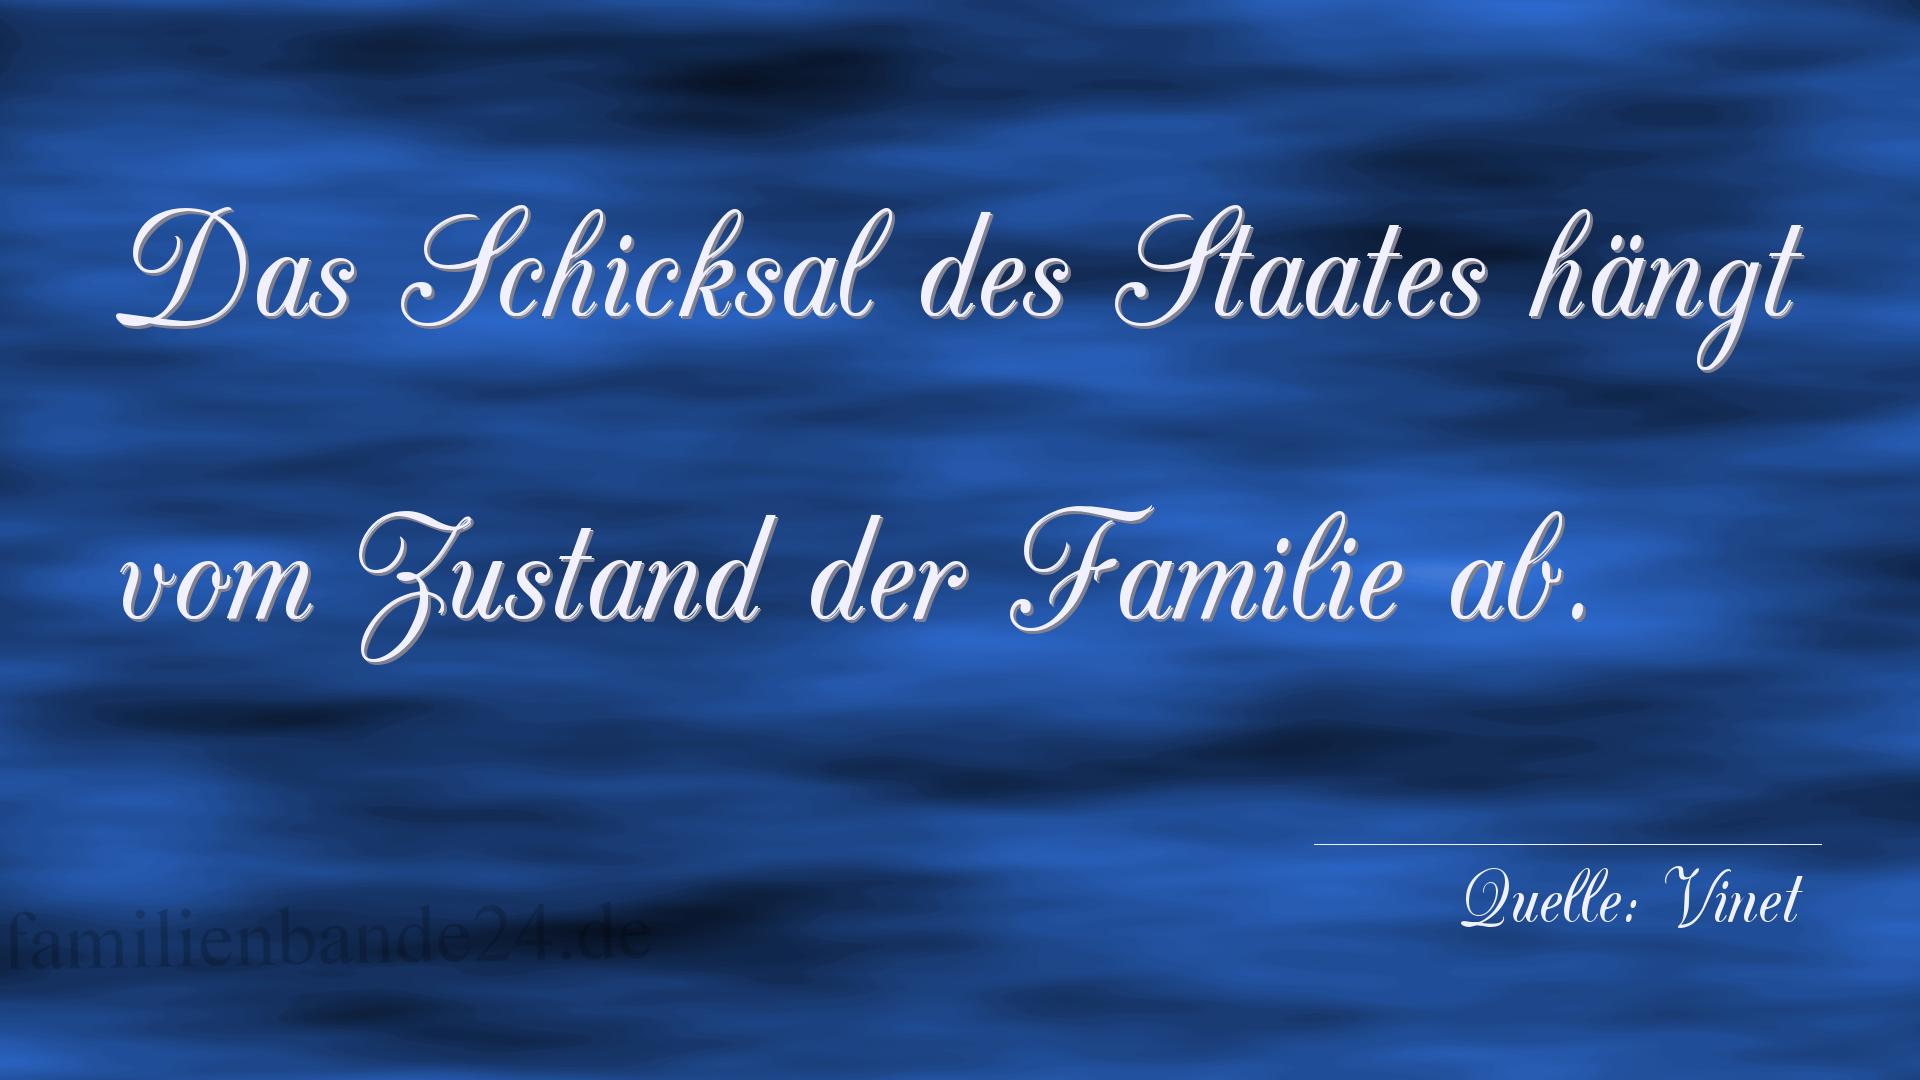 Familienspruch Nr. 343, Quelle Vinet (schweizer. Theologe)